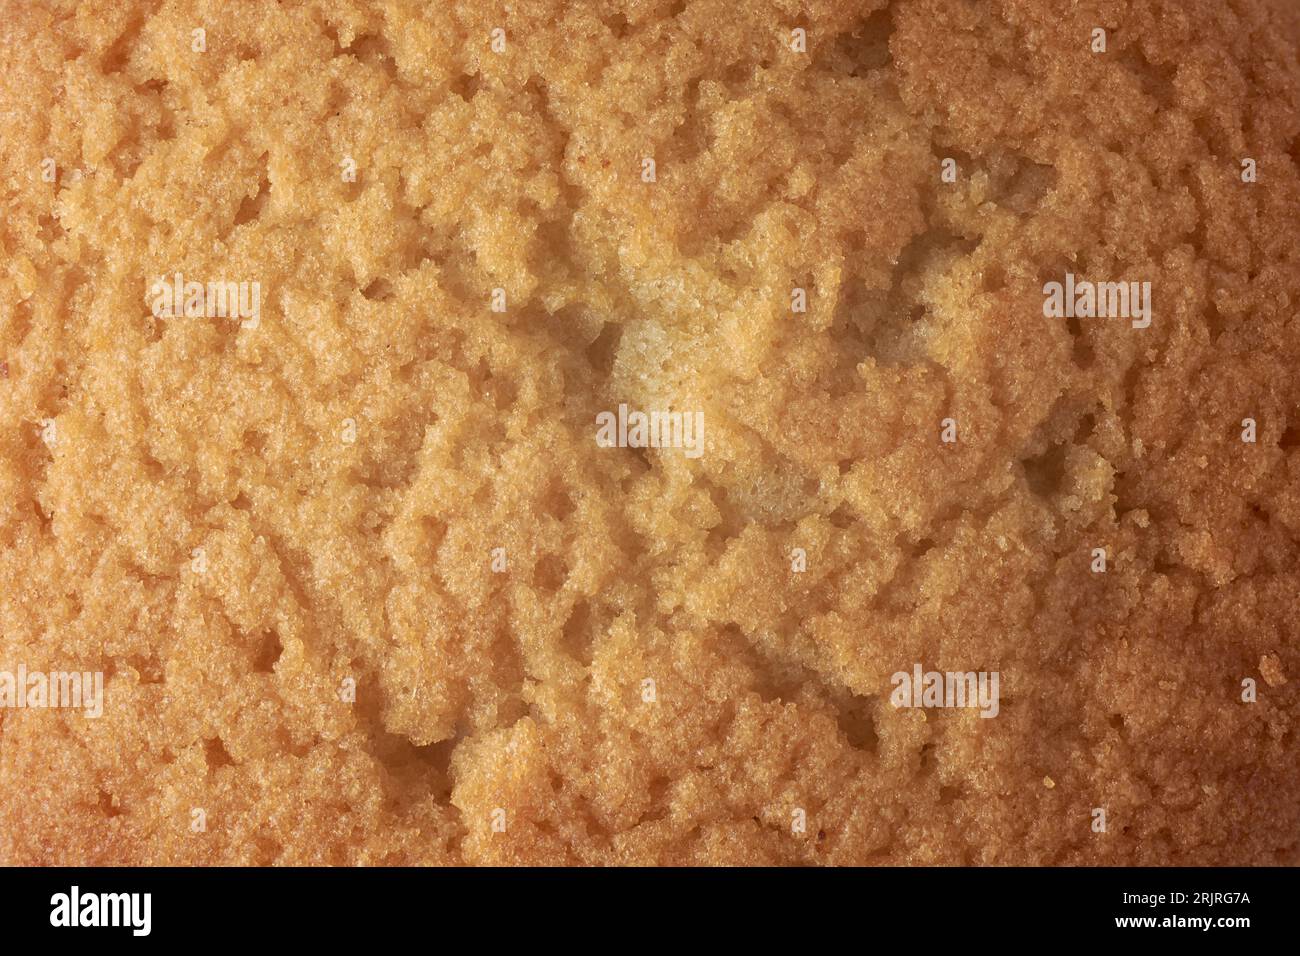 primo piano della superficie della torta, strato superiore dorato di torta di spugna, tazza o torta fatata o muffin, struttura a cornice intera, sfondo alimentare Foto Stock